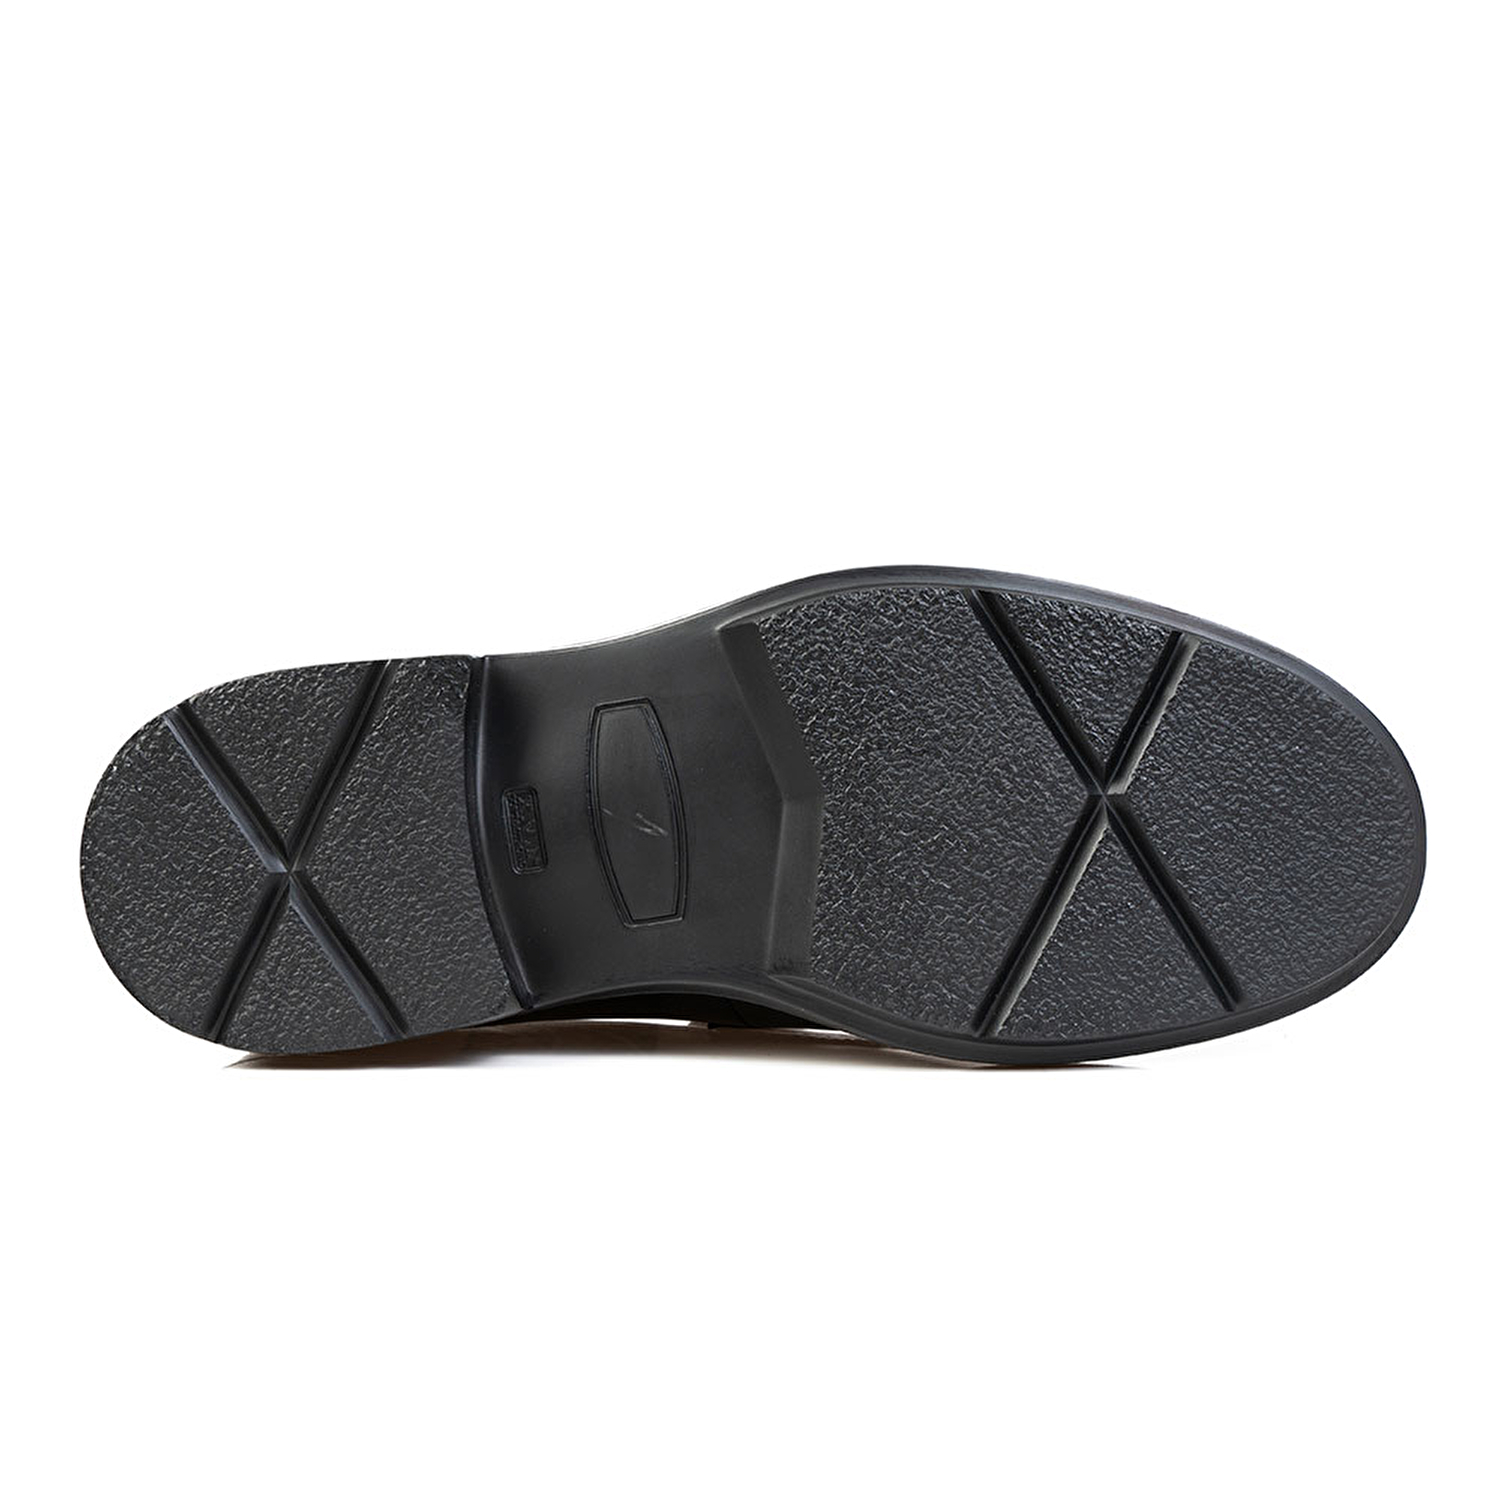 Klasik Erkek Ayakkabı Siyah Deri 67797-6